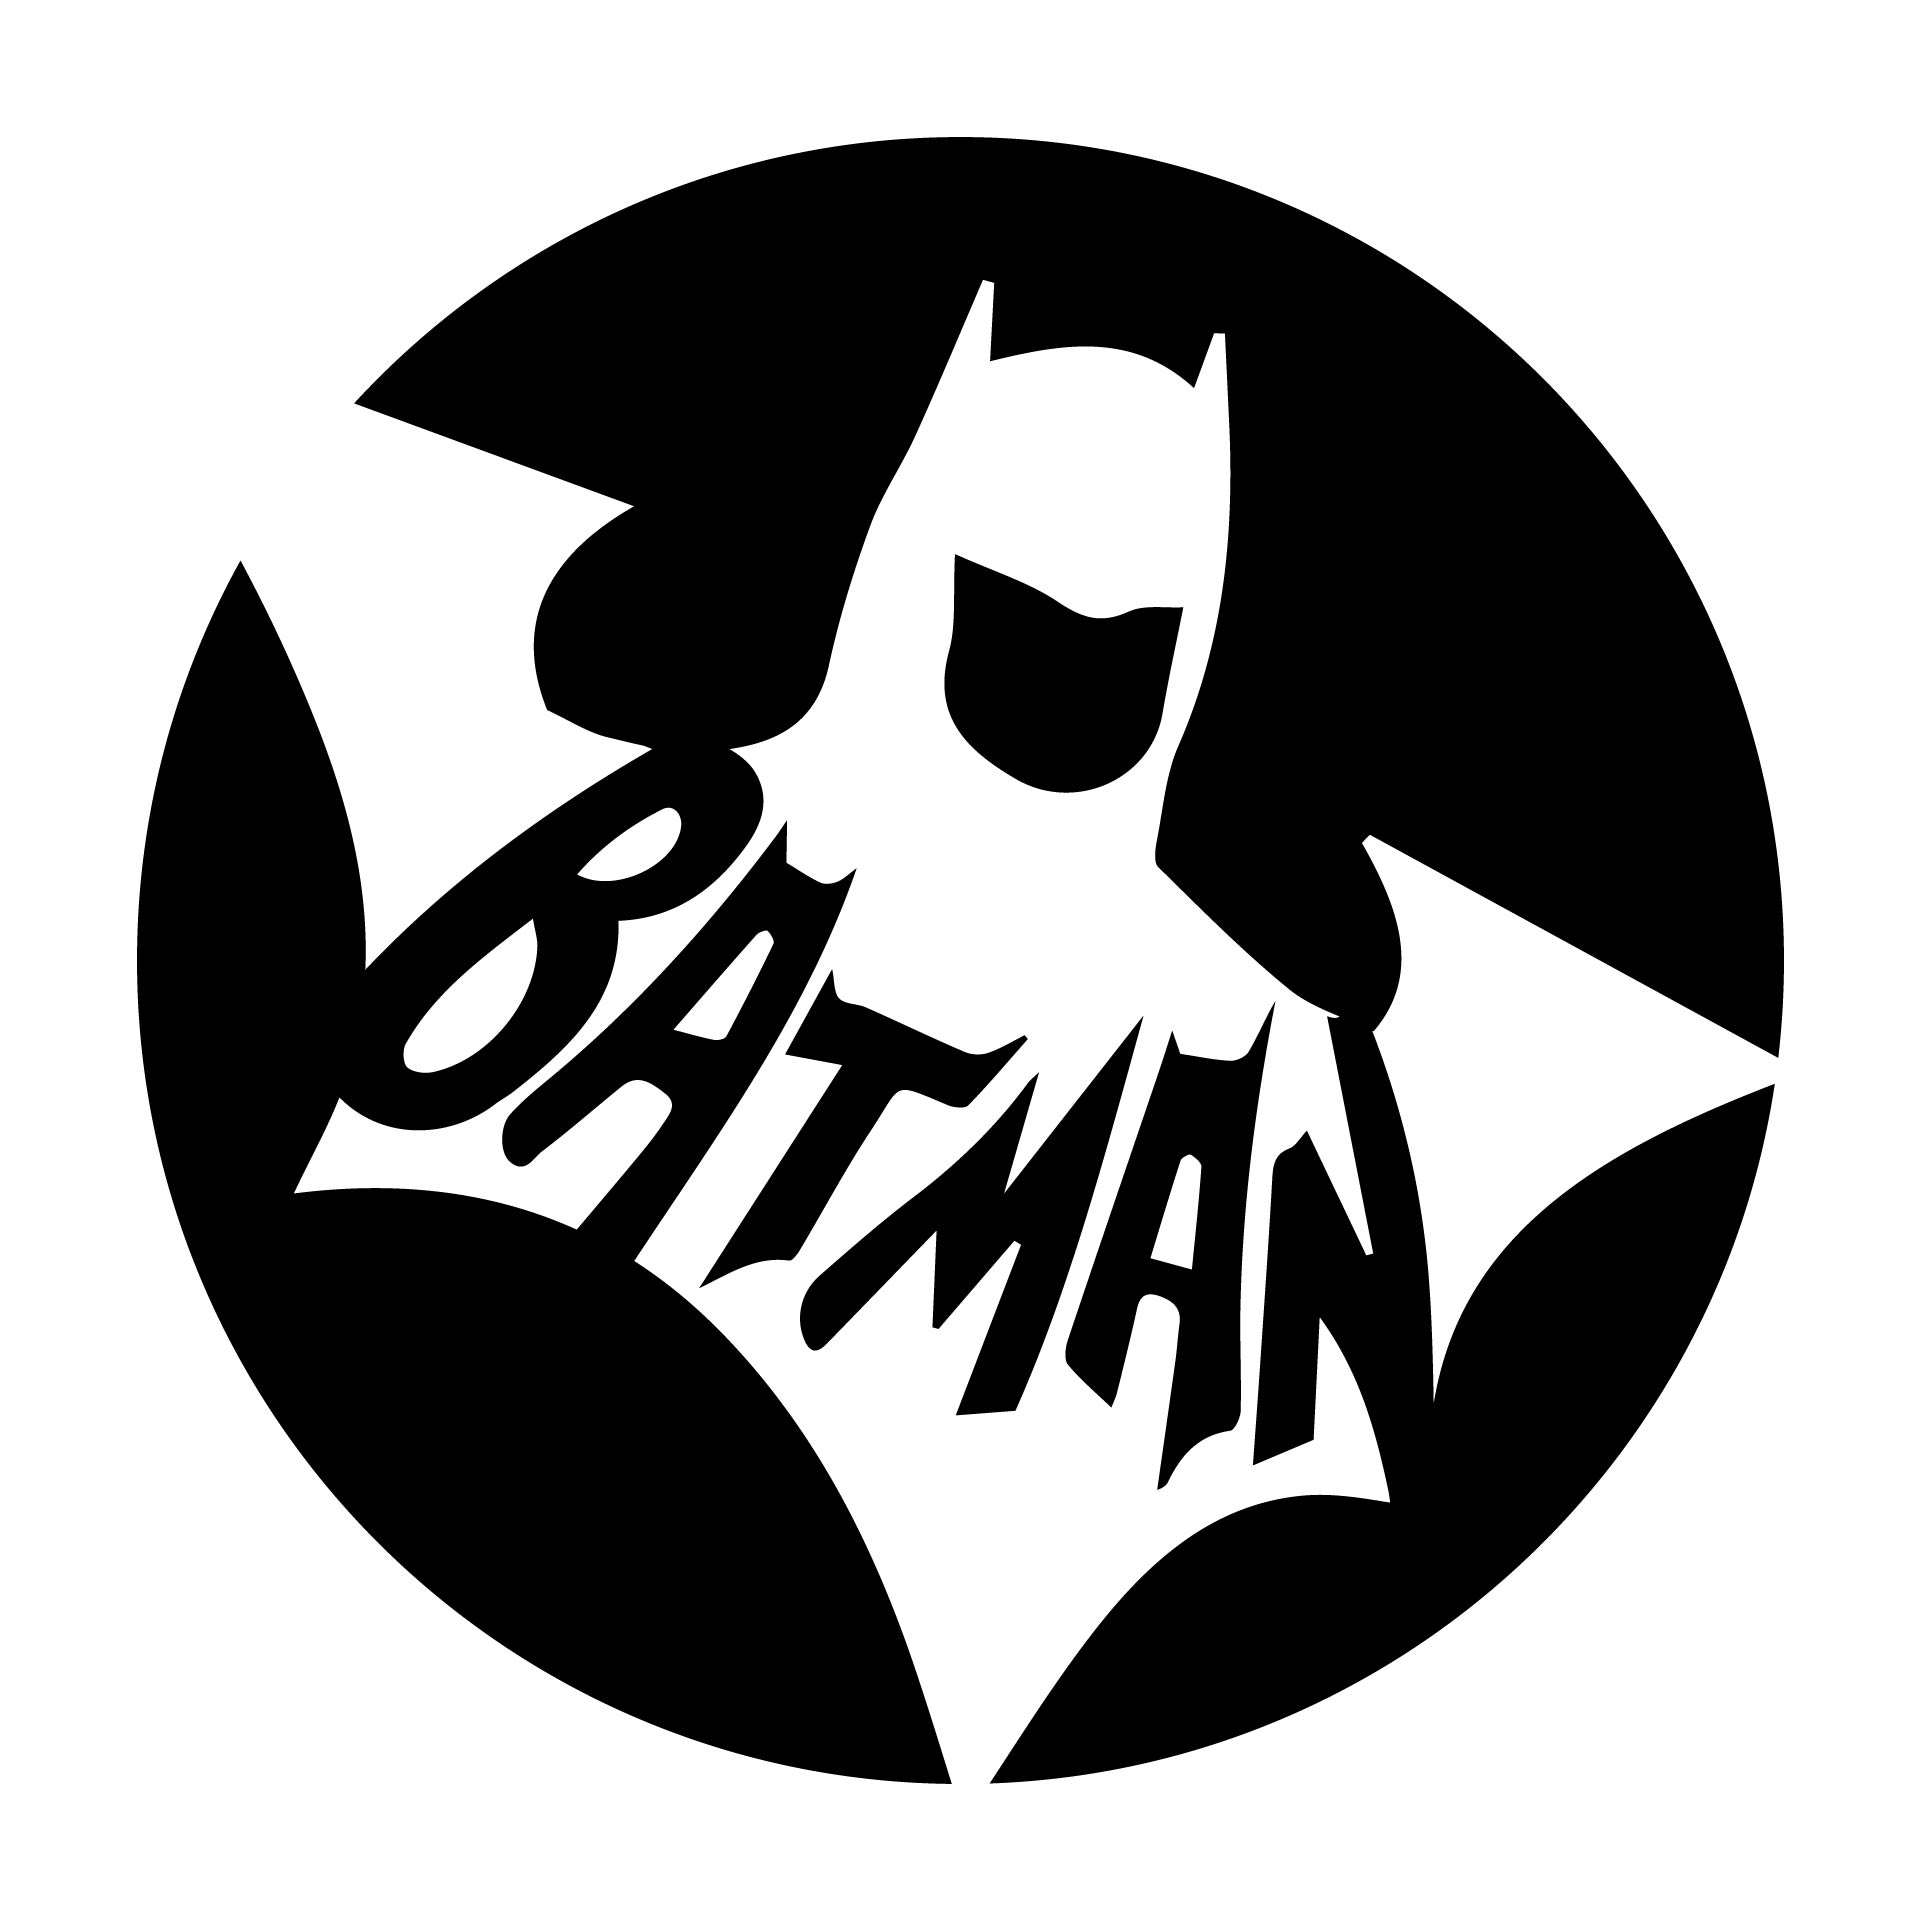 Batman Pumpkin Carving Design